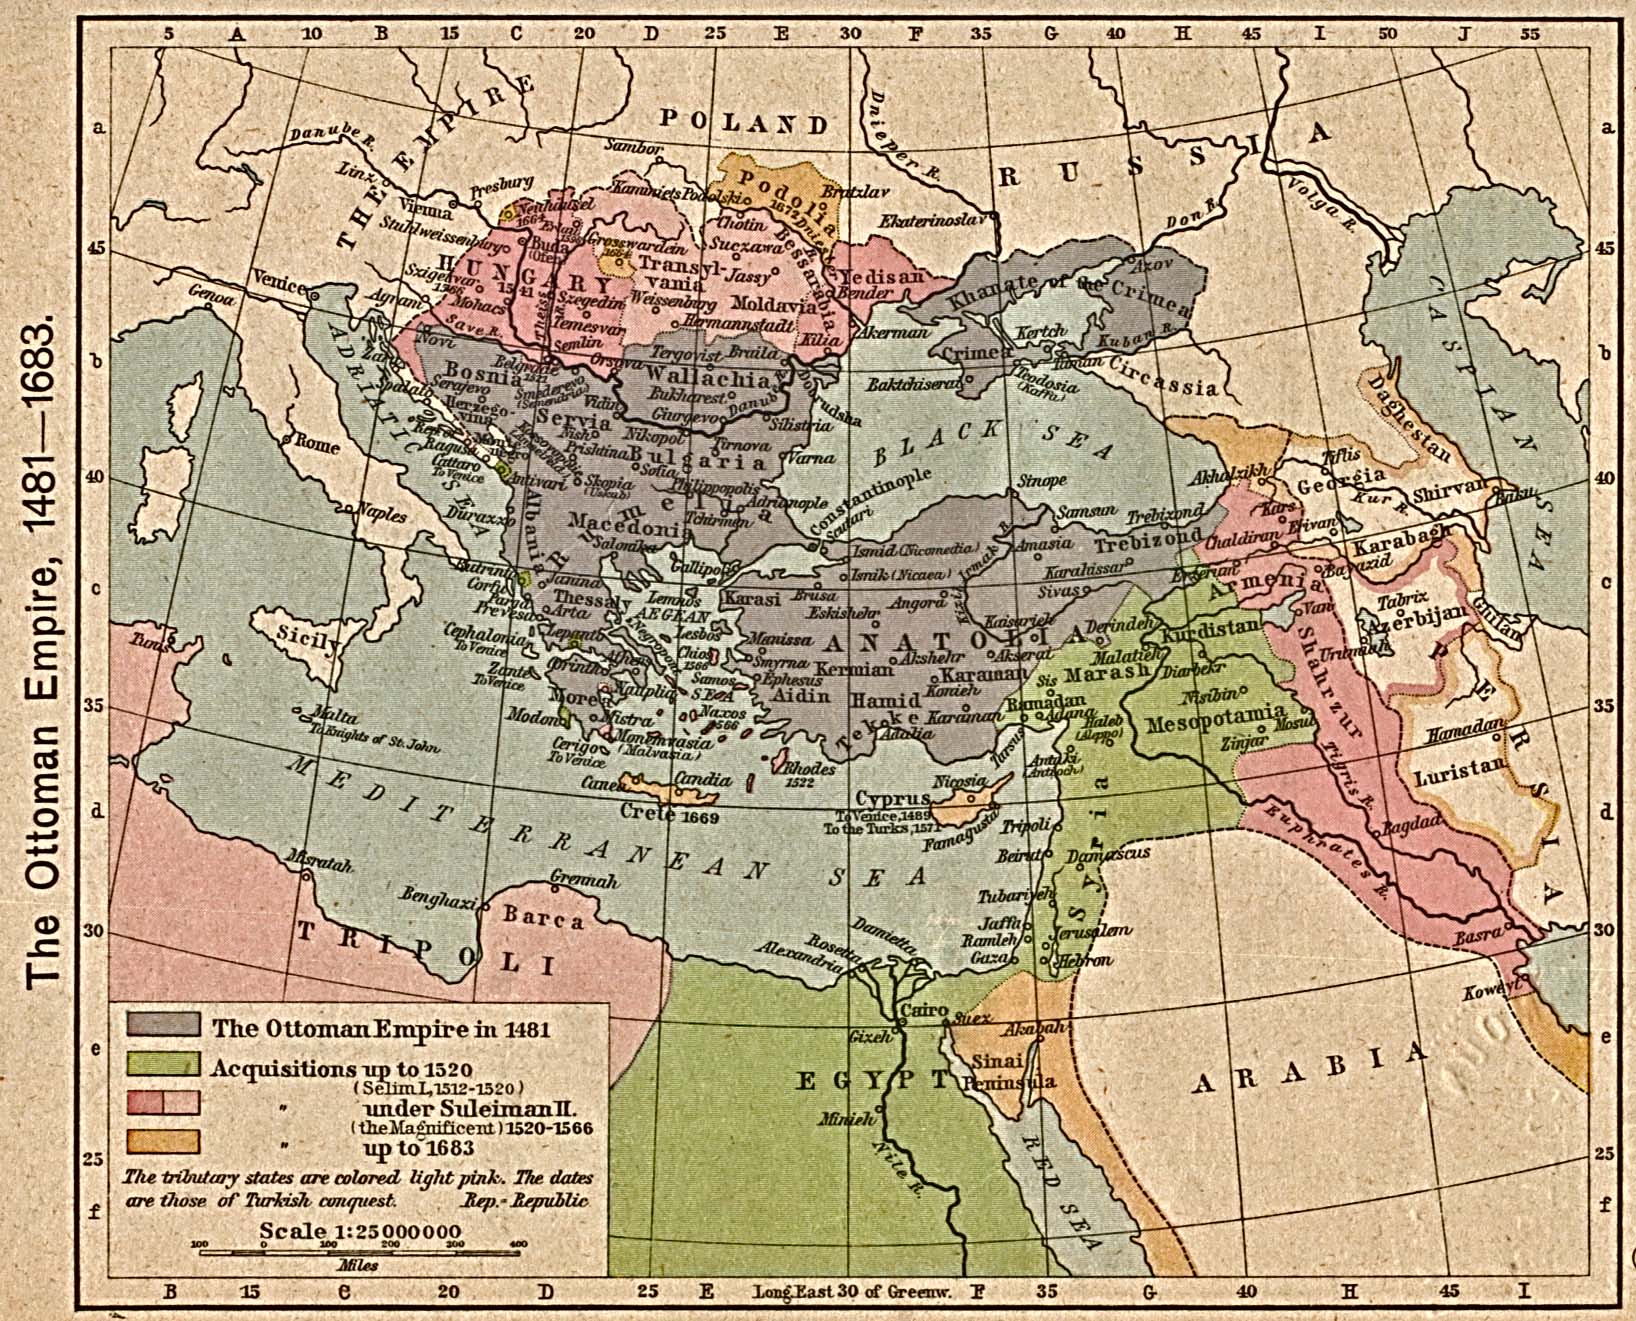 http://www.reisenett.no/map_collection/historical/shepherd/Ottoman_Empire_1481-1683.jpg